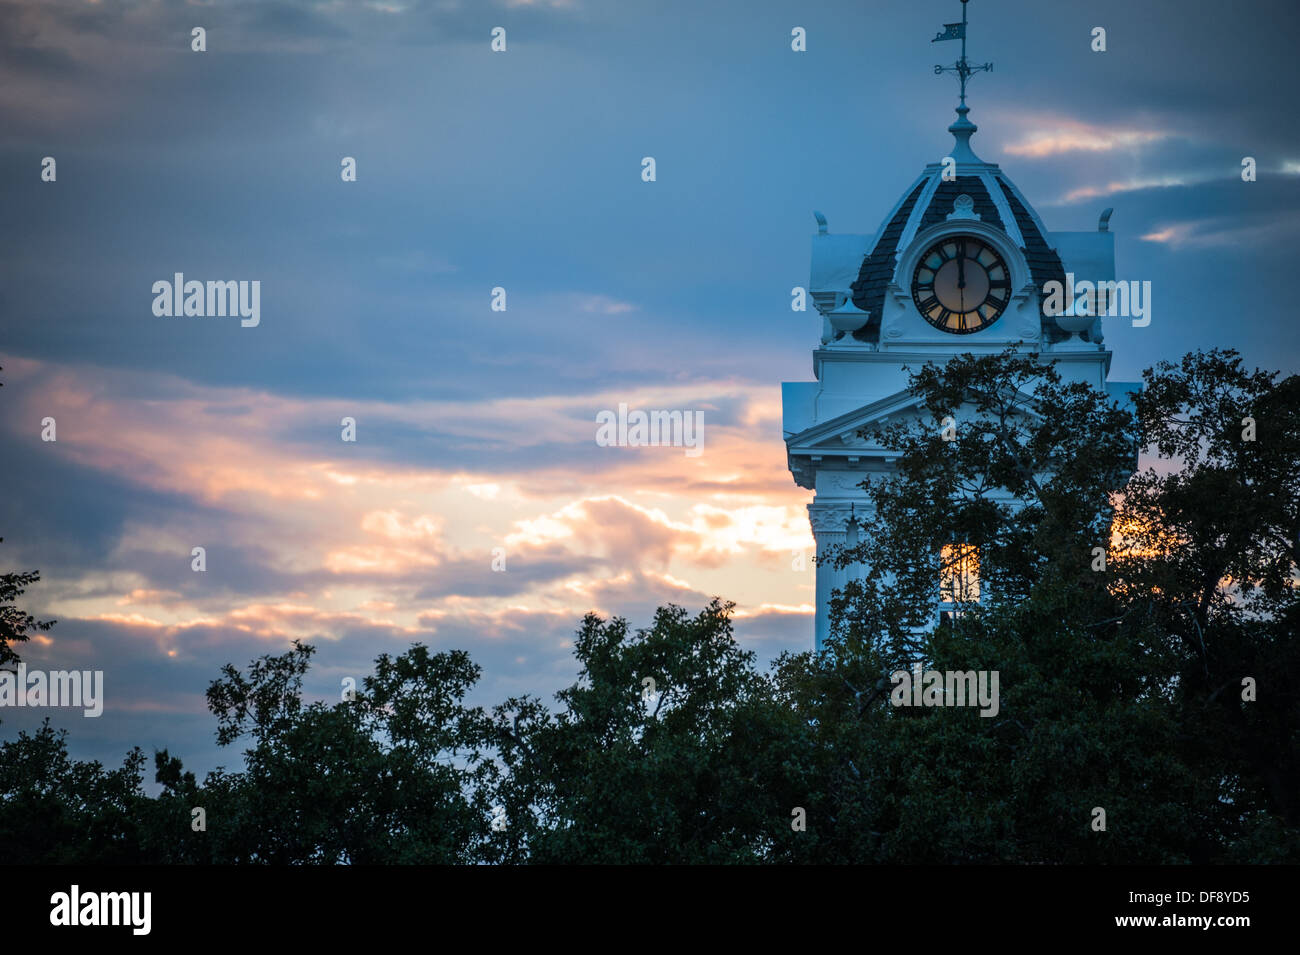 Le crépuscule s'installe sur le palais de justice historique de Gwinnett à Lawrenceville, en Géorgie, tandis que le soleil couchant illumine l'horloge de la tour. (ÉTATS-UNIS) Banque D'Images